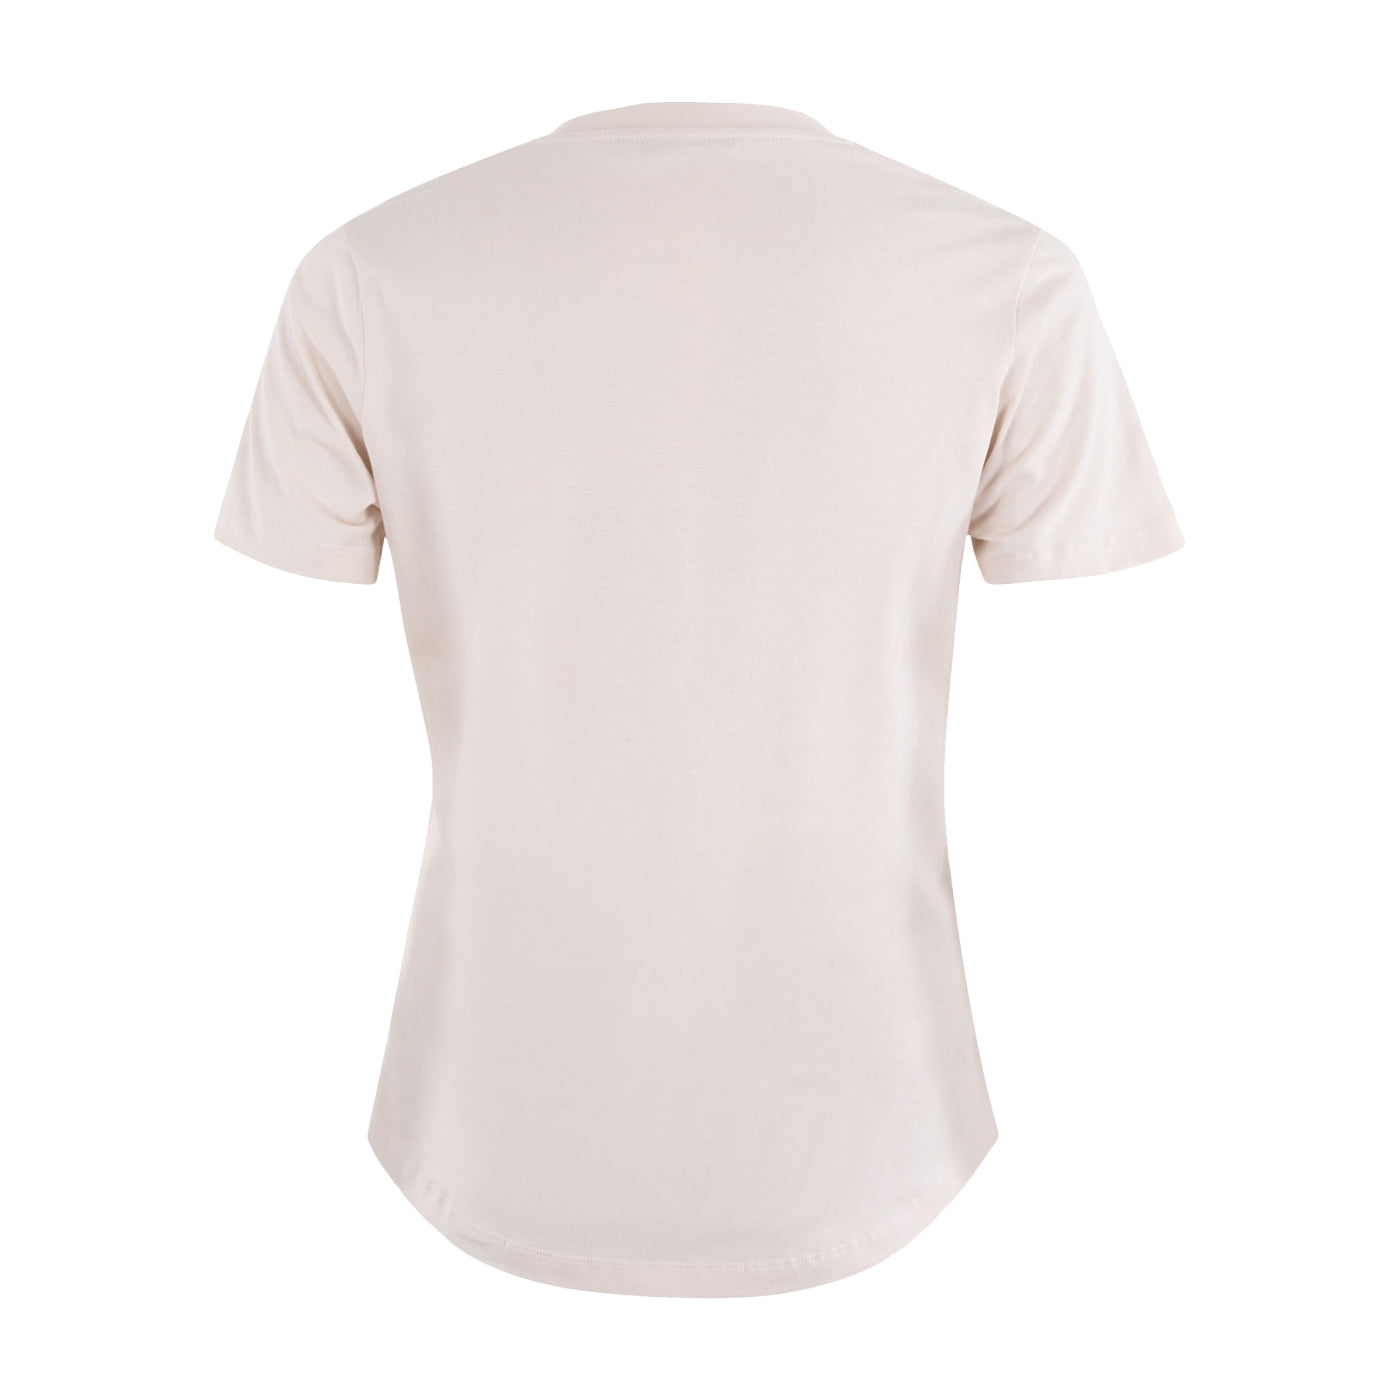 MSCW Mode sale kaufen Strauch C. – T-Shirt Designer Mode in jetzt beige online günstig